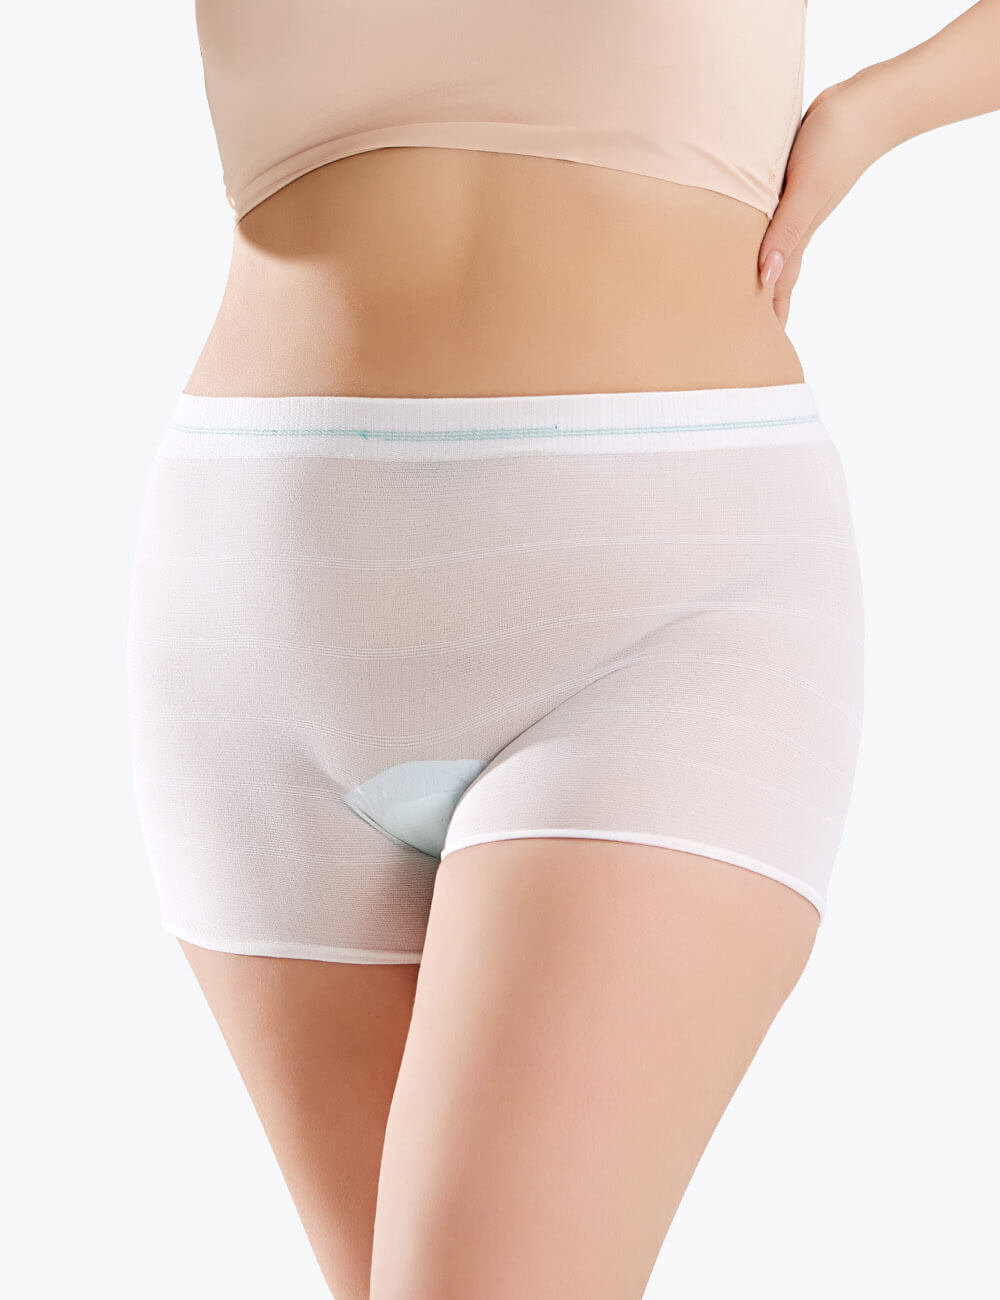 Postpartum Disposable Mesh Underwear Plus Size For C-Section